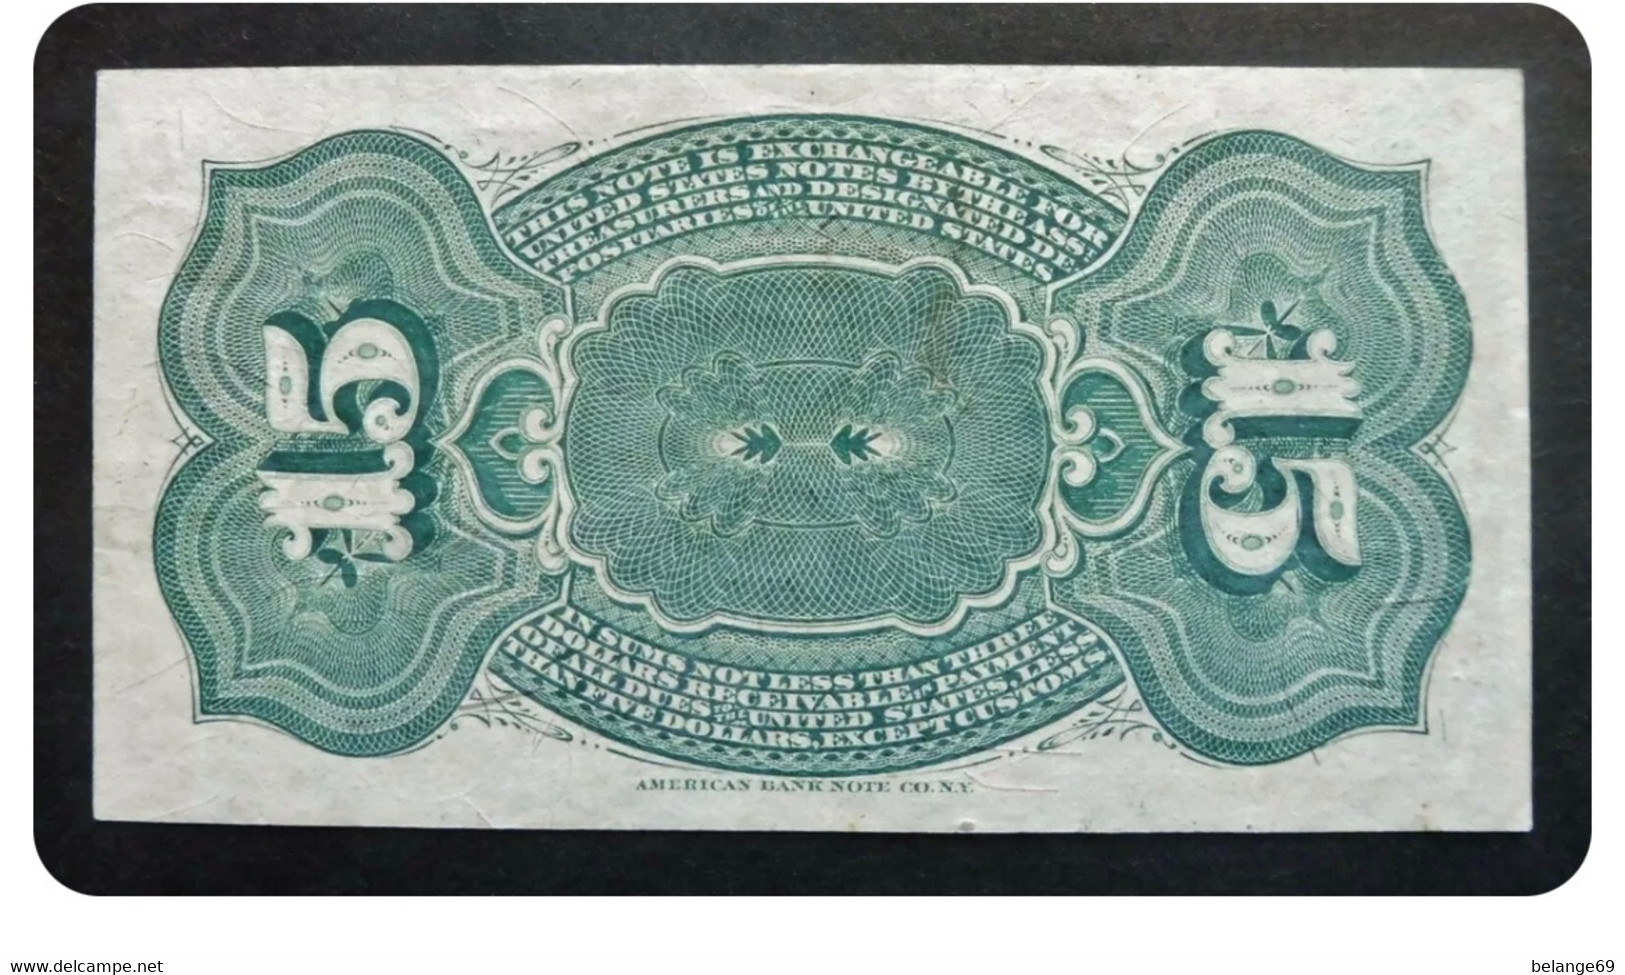 Etats Unis D'Amérique - 15 Cents - 3 Mars 1863 - United States Notes (1862-1923)